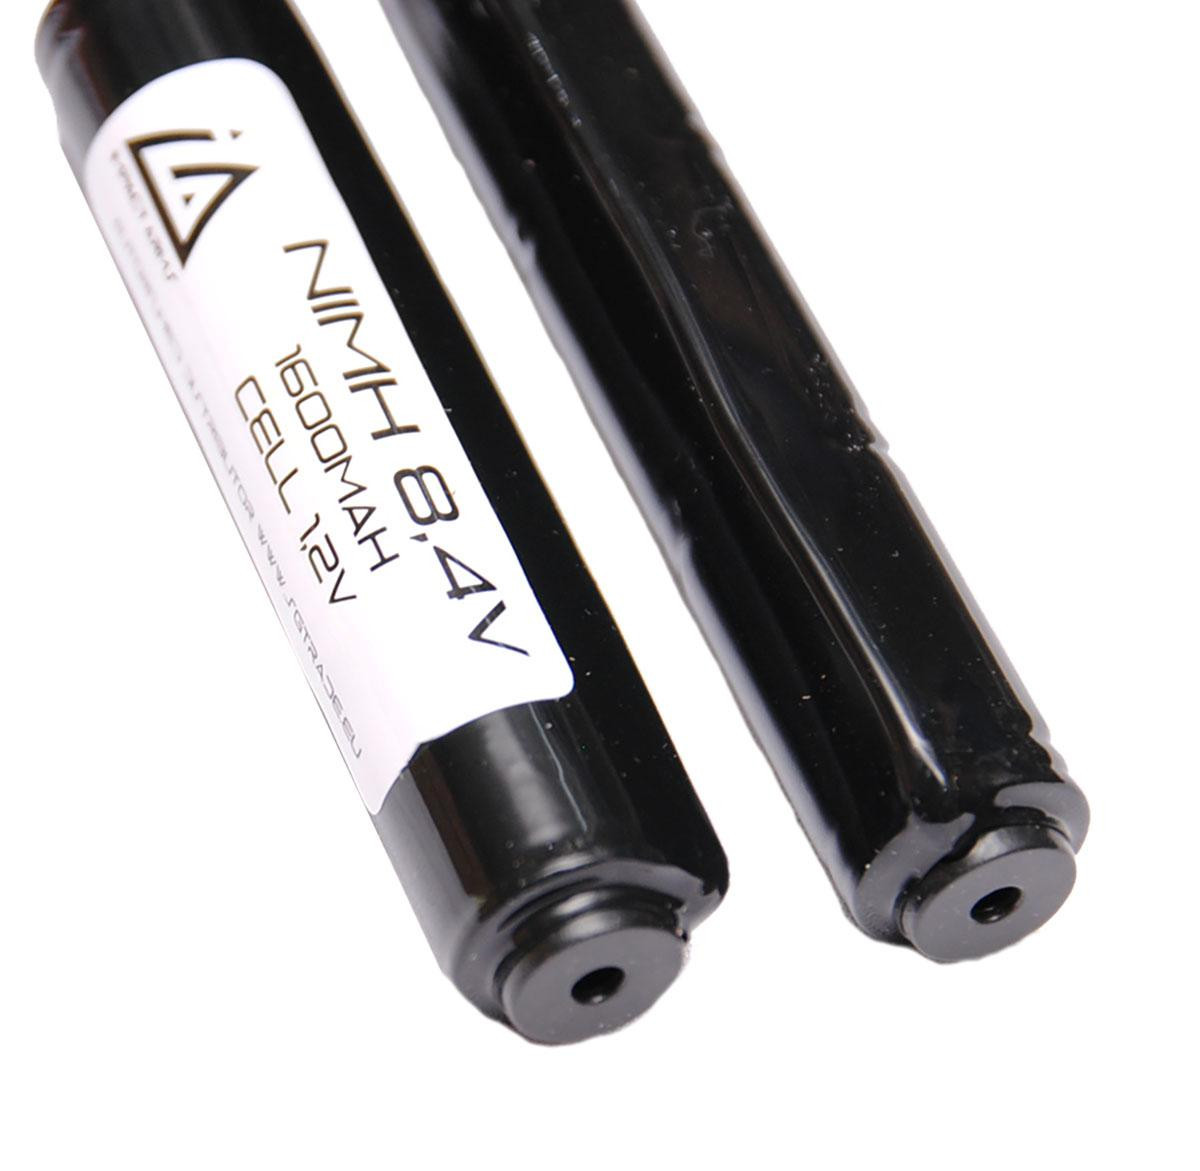 Batterie NIMH 8,4V 1600Mah double baton avec Mini Tamiya